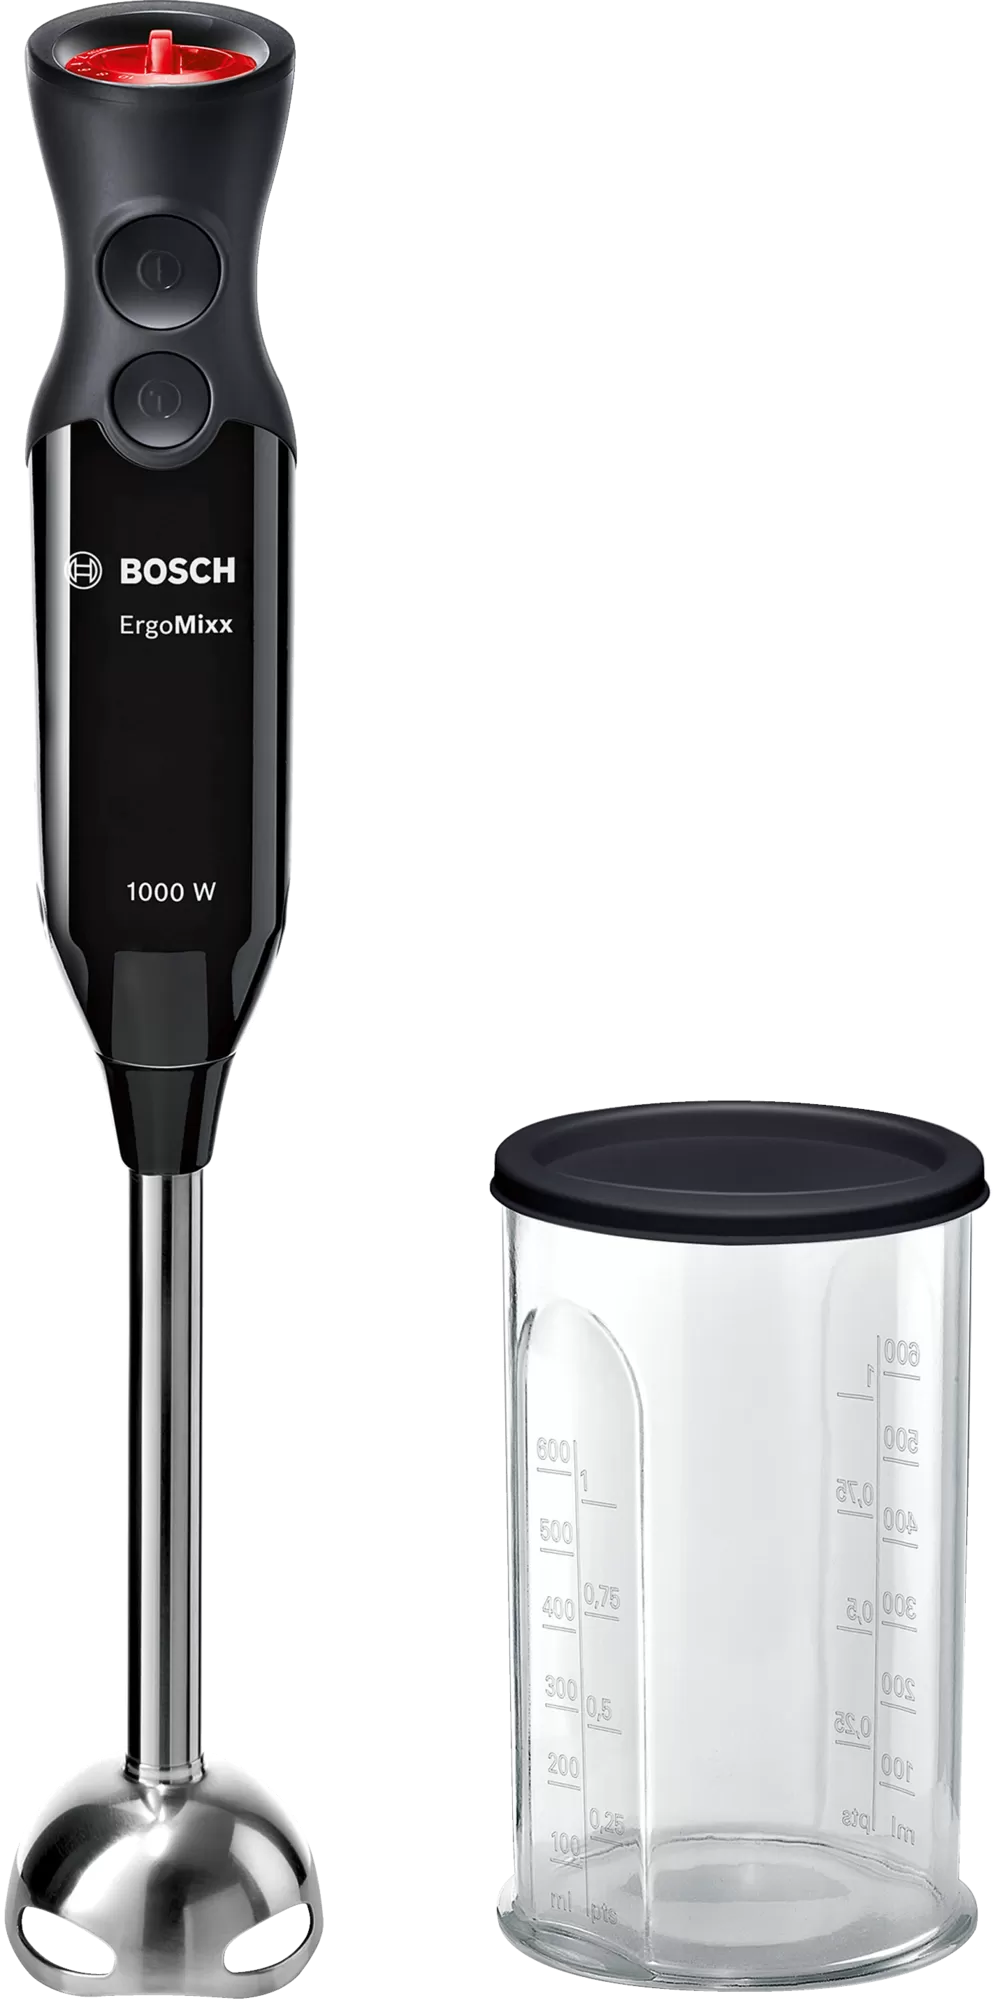 Блендер погружной Bosch ErgoMixx MS6CB6110 1000Вт, черный/серебристый (MS6CB6110), цвет черный/серебристый - фото 1